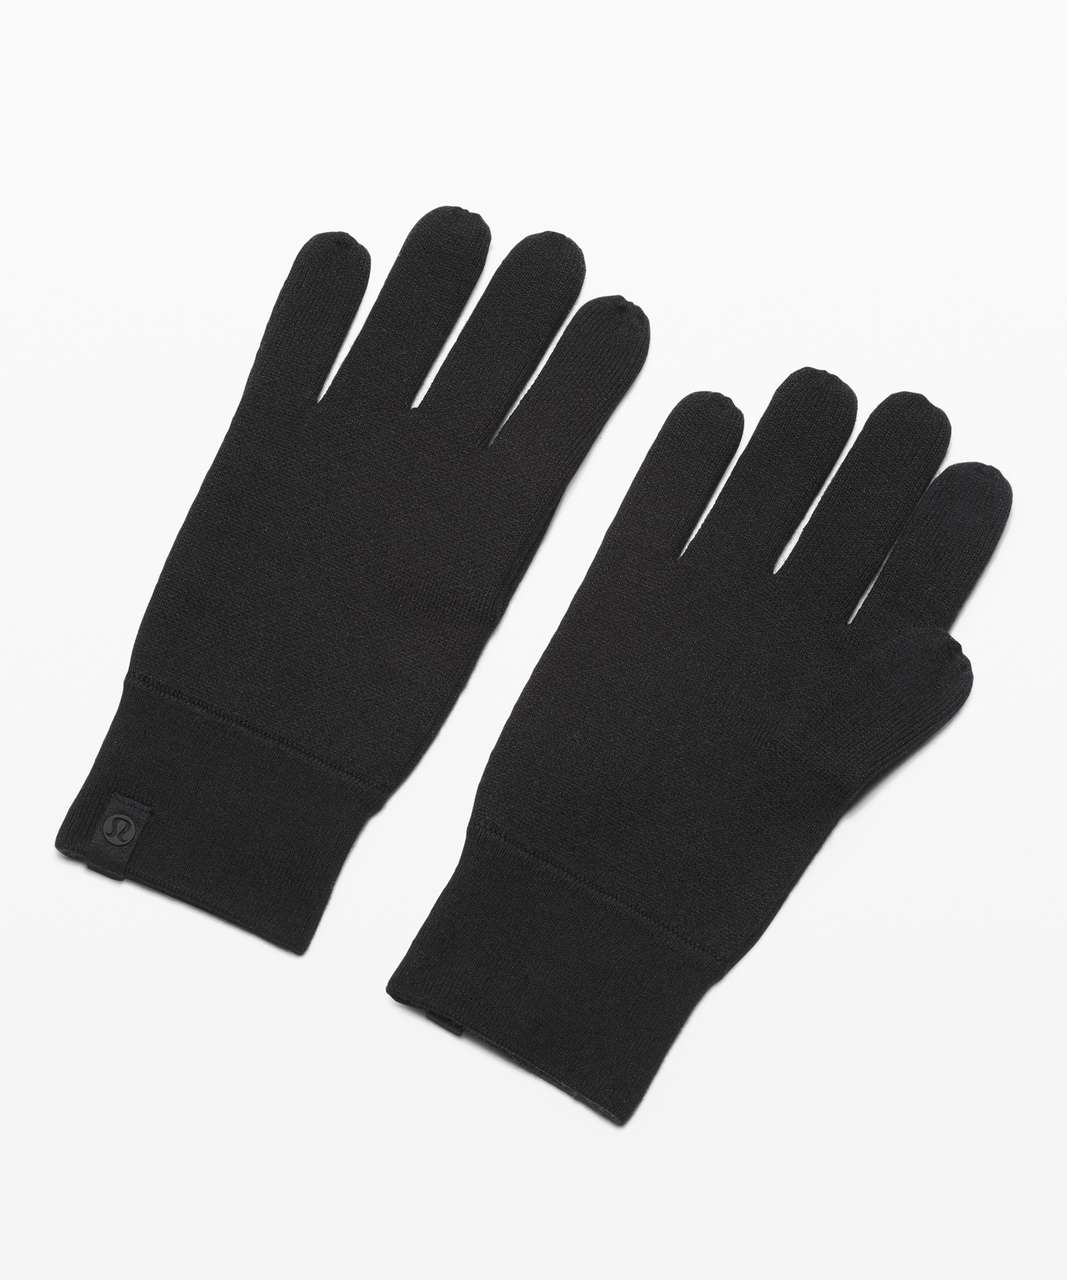 Lululemon Alpine Air Glove - Black / Graphite Grey